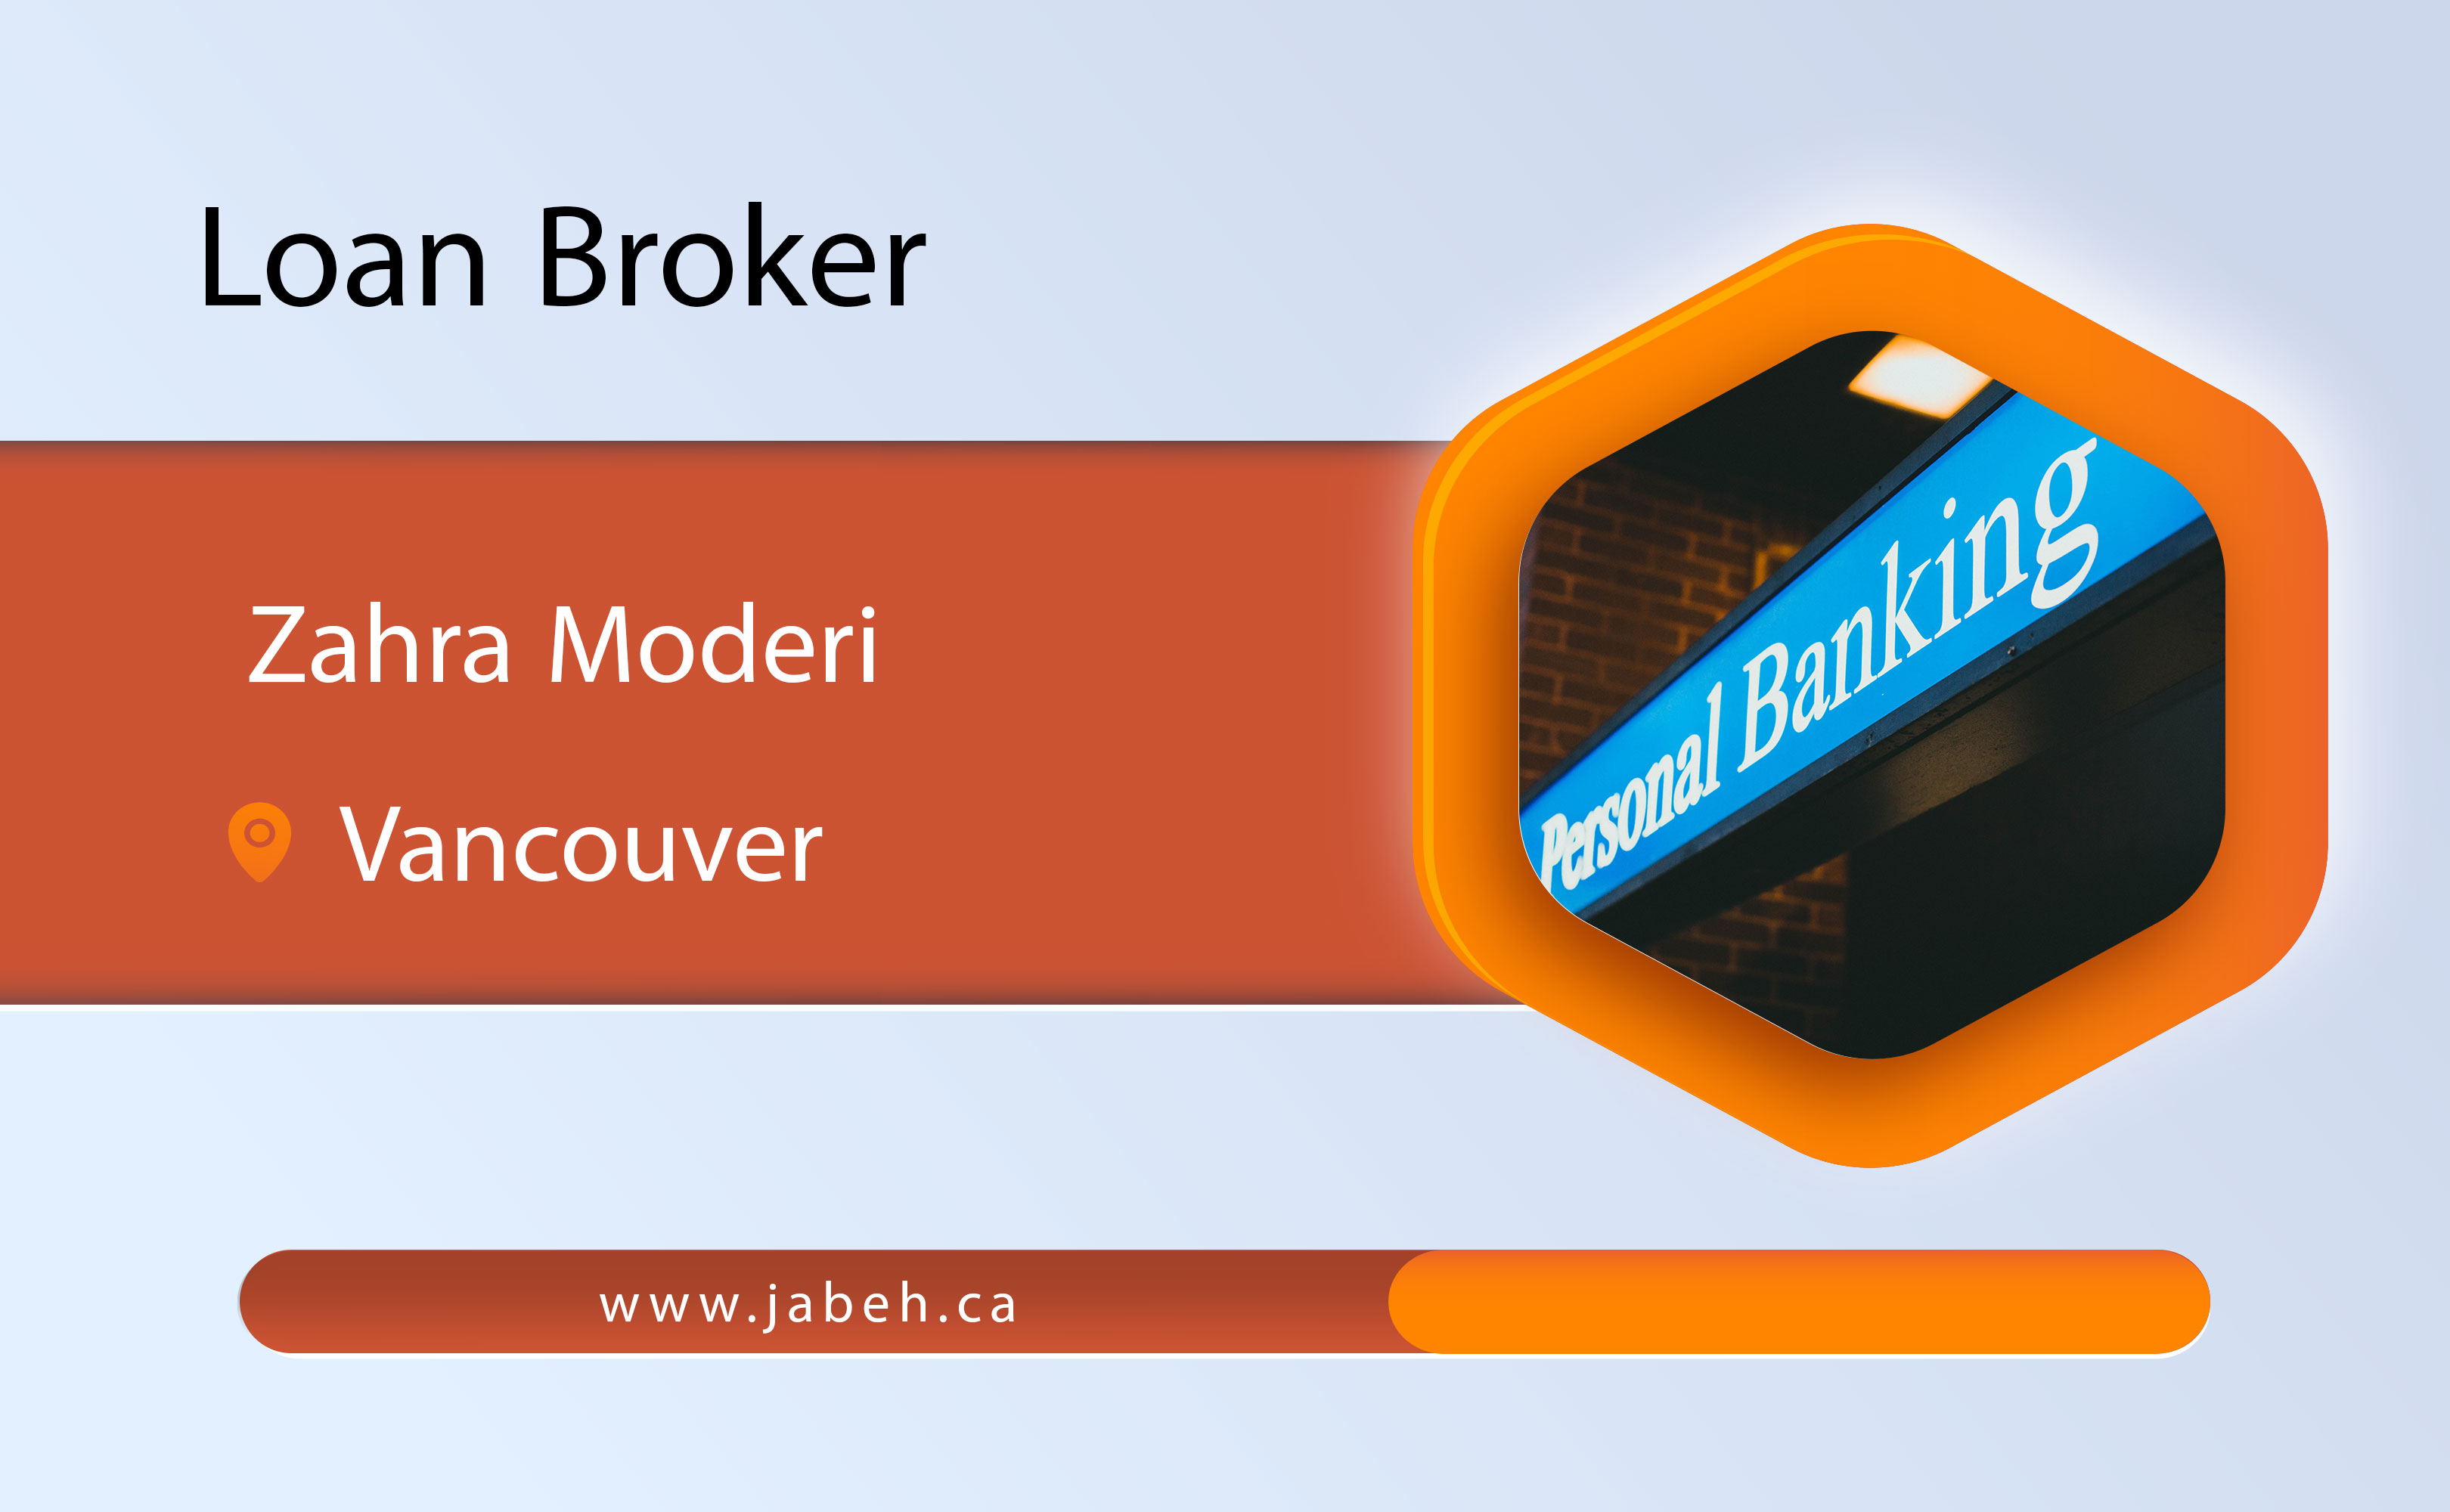 Iranian loan broker Zahra Moderi in Vancouver